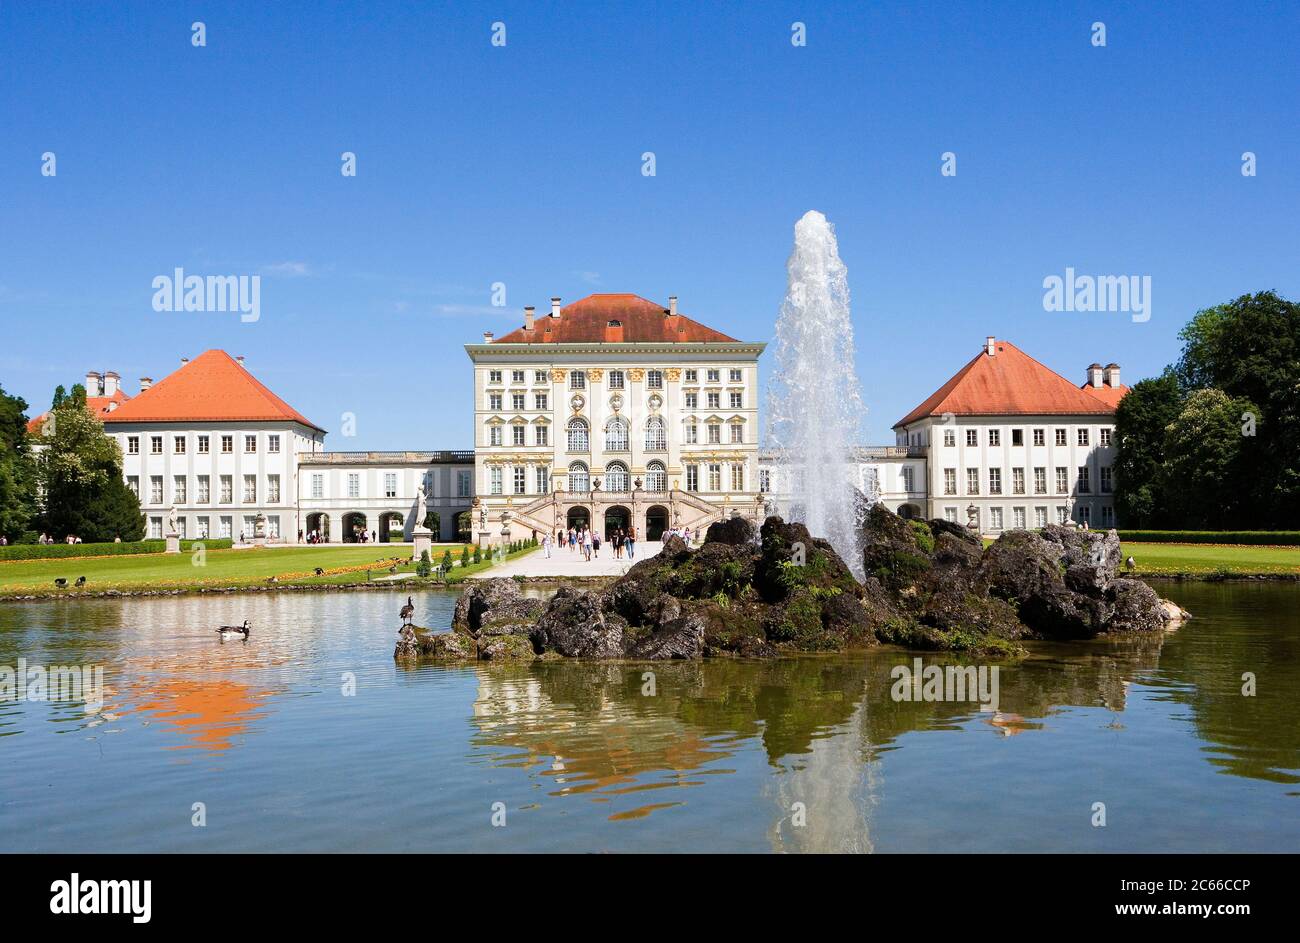 Munich, Palais Nymphenburg, début de la construction 1664 - 1675, inspiré du Palais piémontais de Venaria, vue du palais depuis le jardin formel français, l'un des grands palais royaux d'Europe Banque D'Images